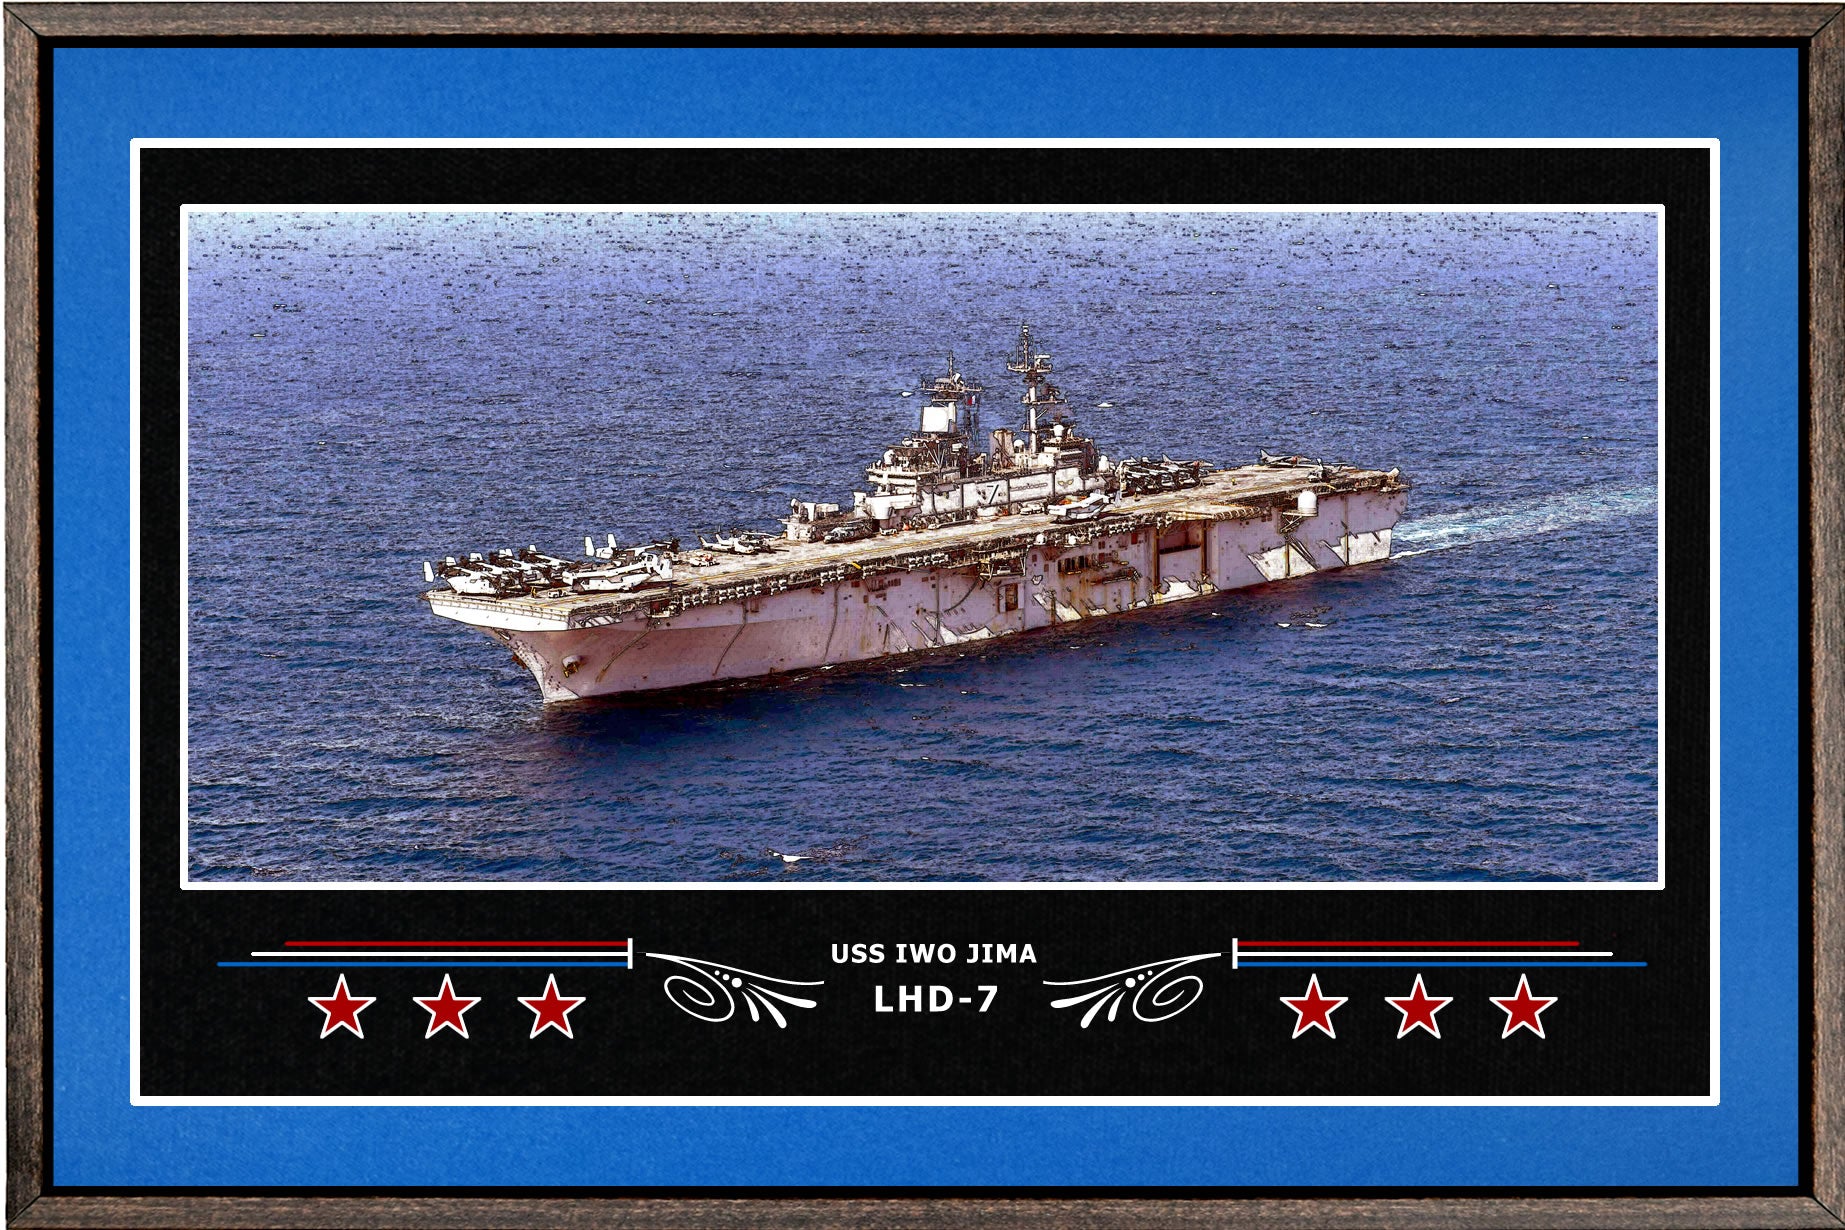 USS IWO JIMA LHD 7 BOX FRAMED CANVAS ART BLUE